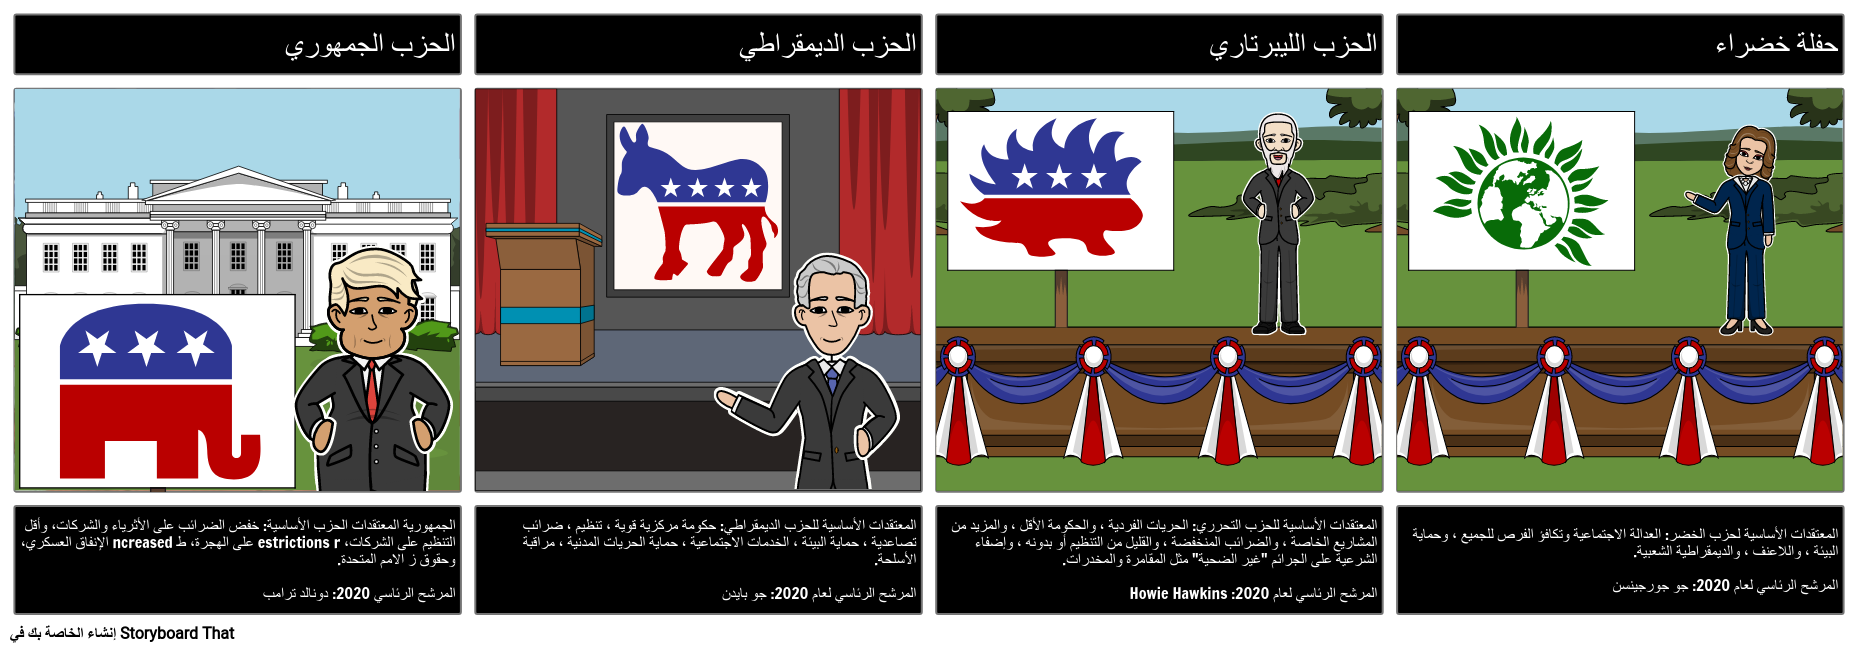 الأحزاب السياسية المختلفة